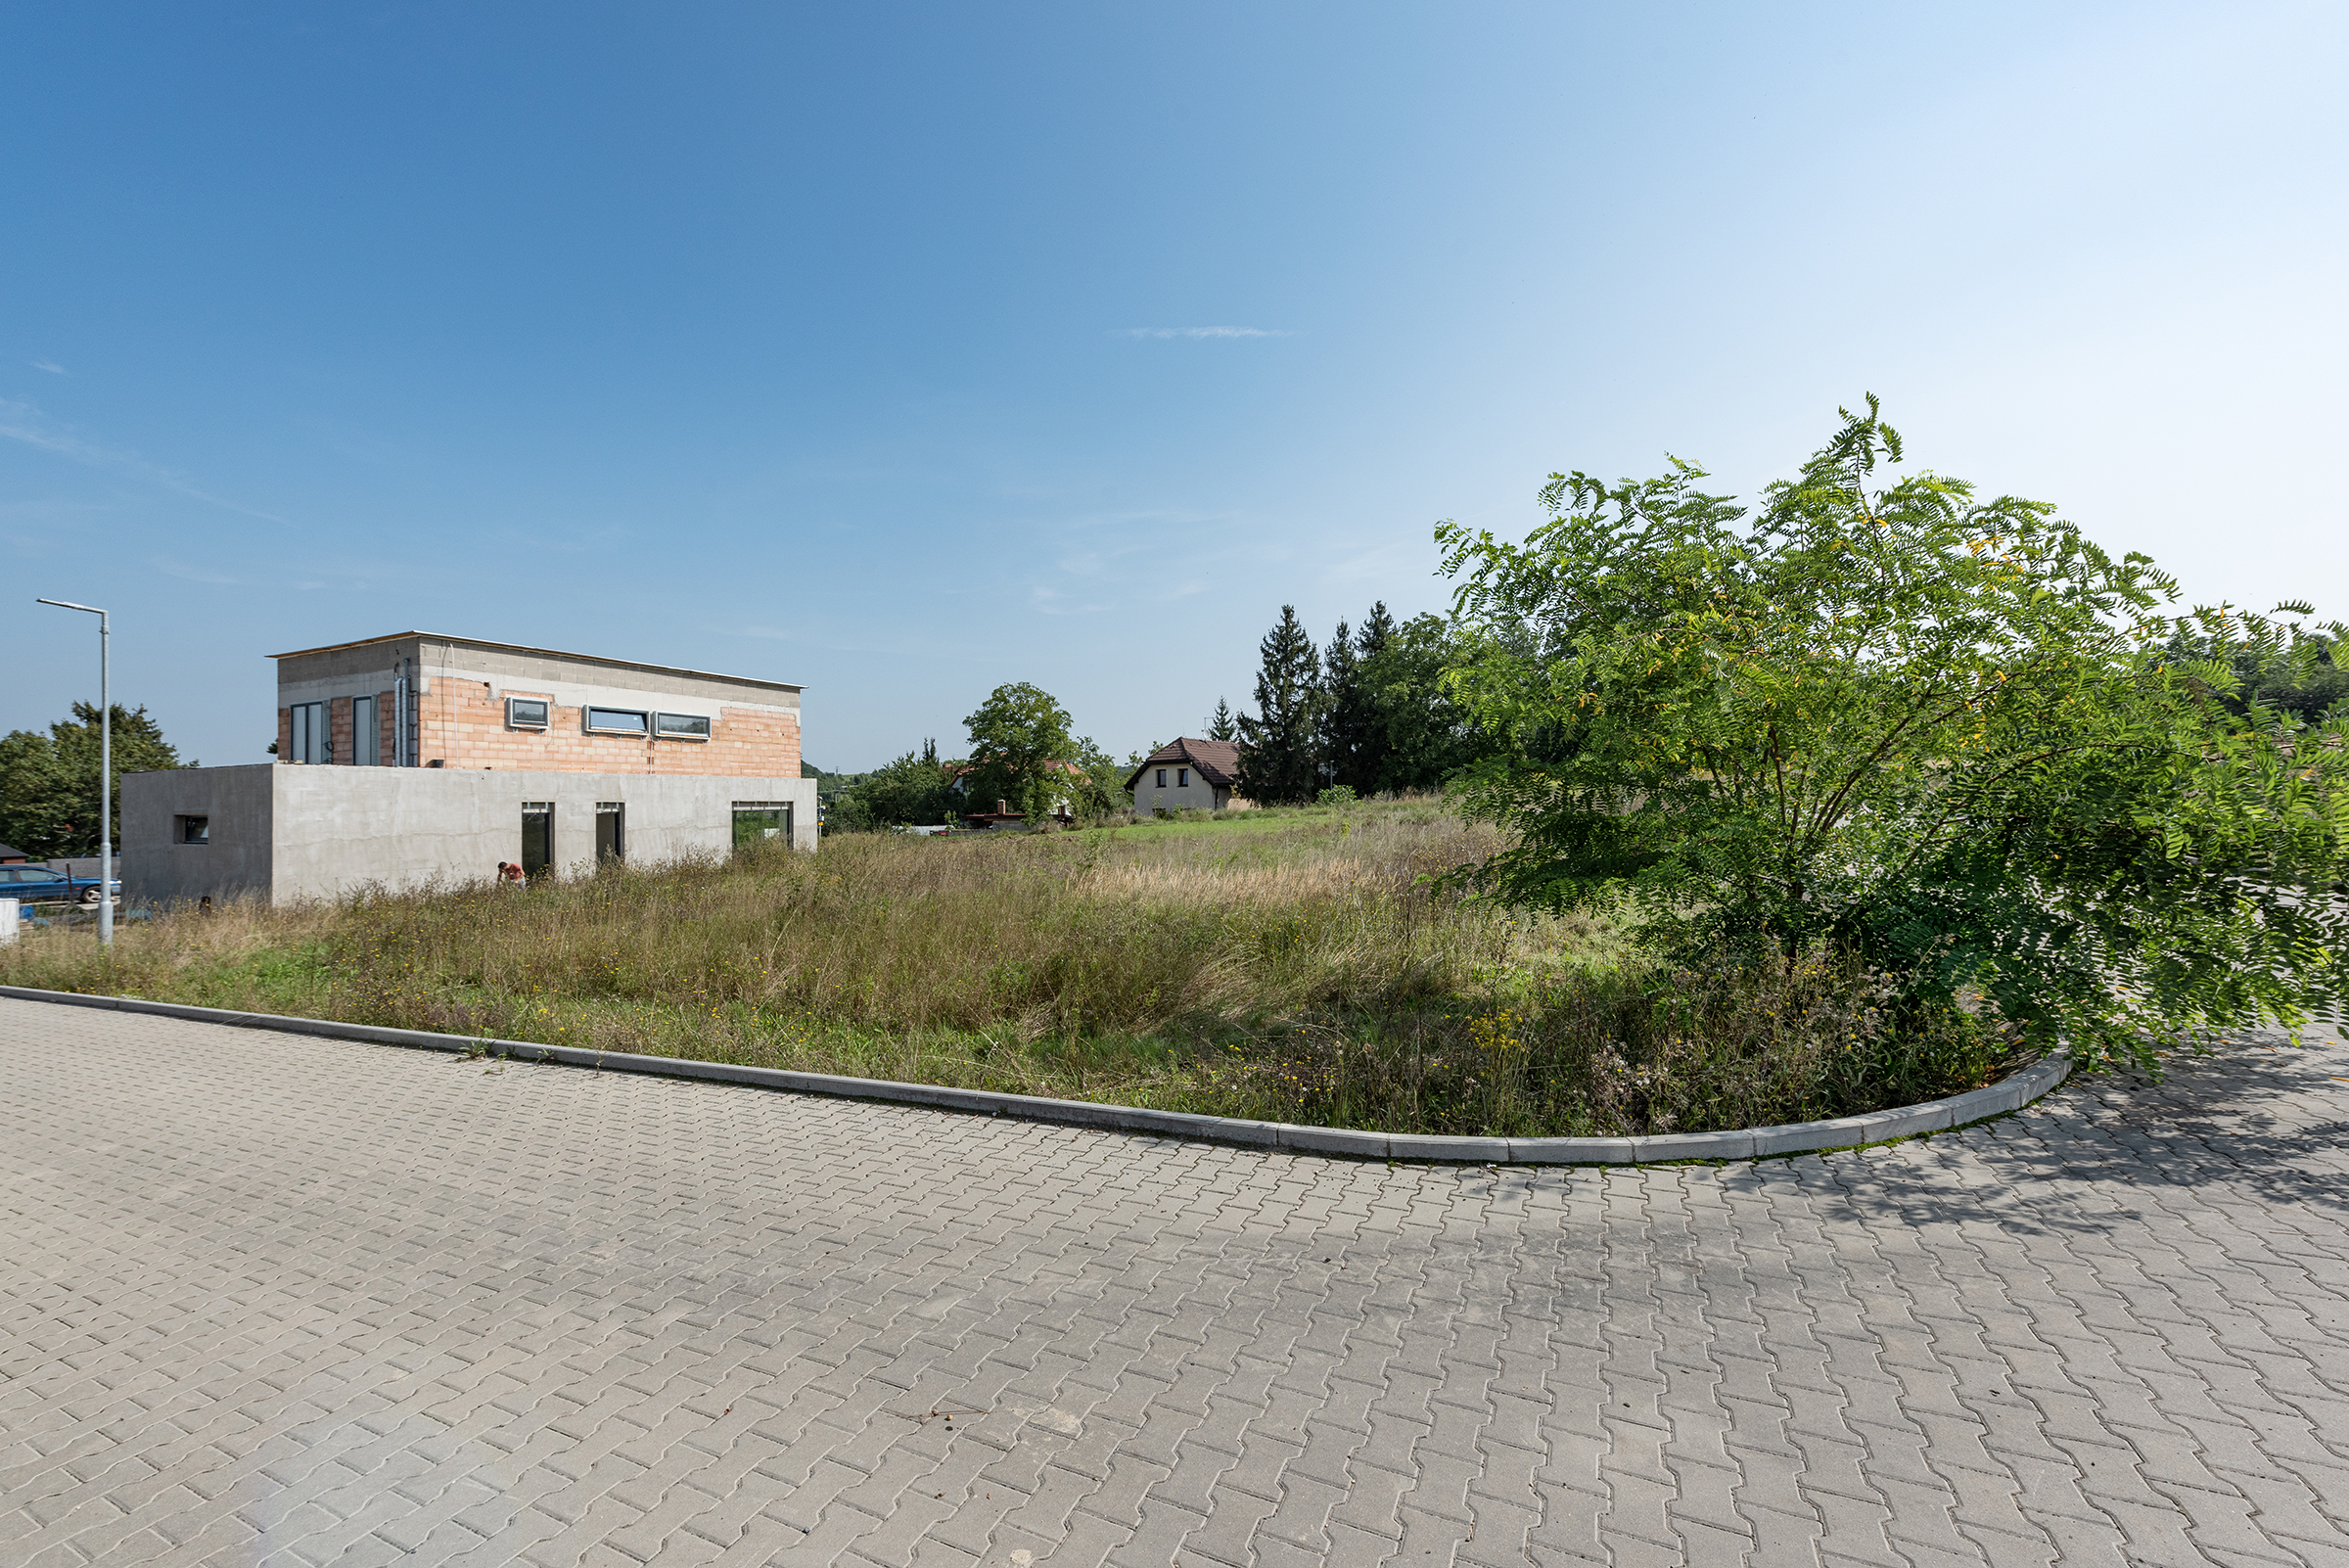 Rovinatý exkluzivní stavební pozemek 657m2, obec Zdiby – 9 km od centra Prahy, okr. Praha – východ